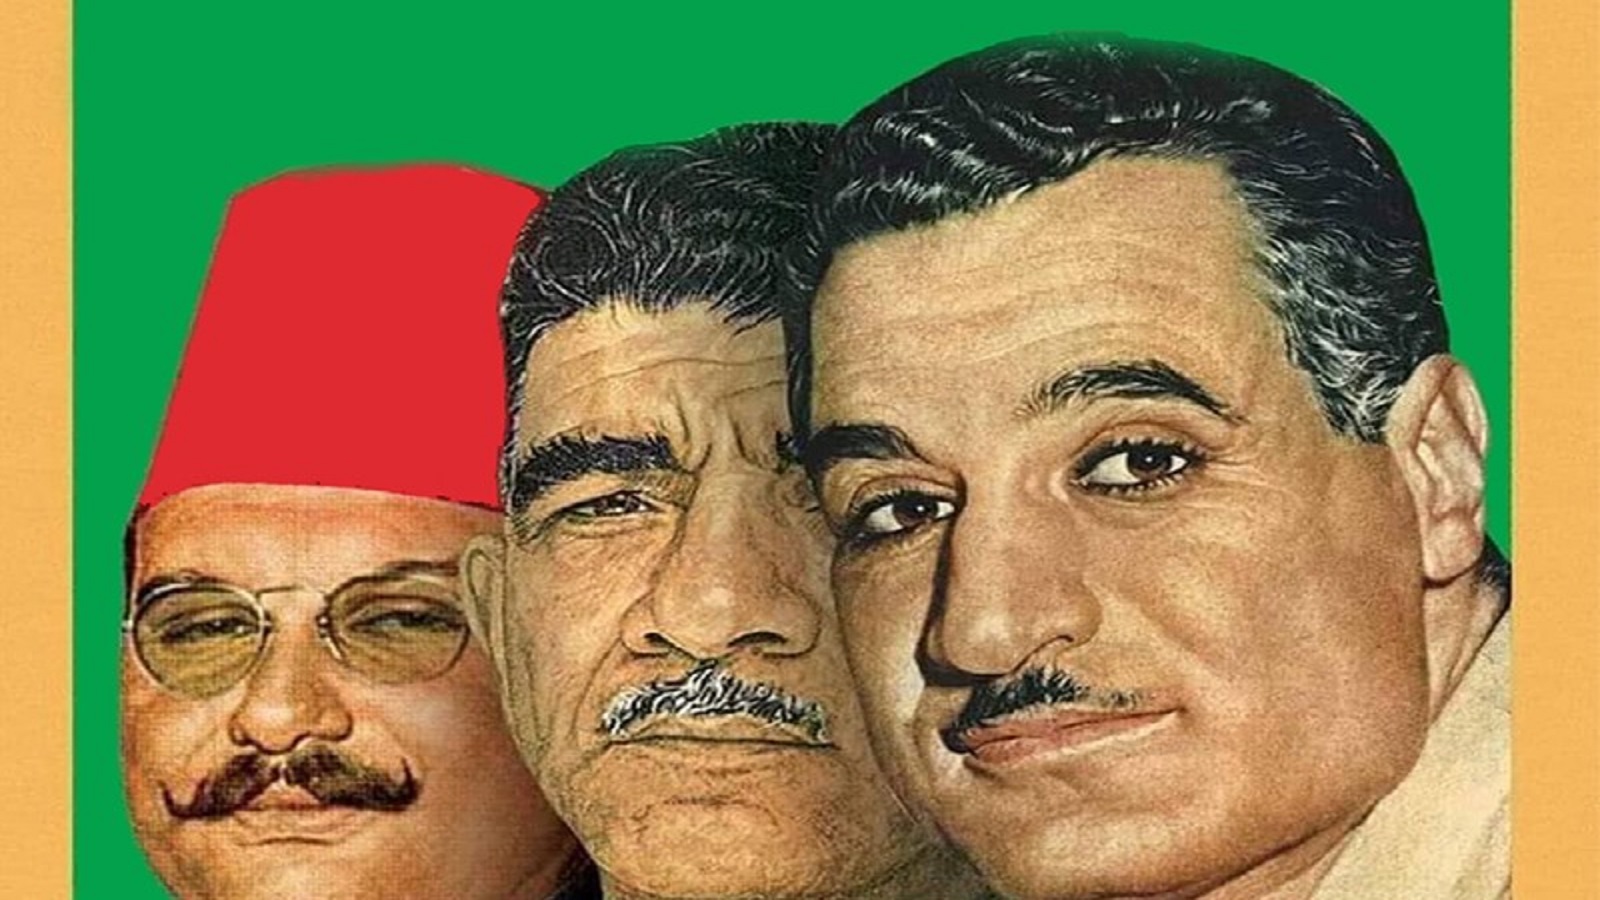 ملك تافه وزعيم مهزوم.. فاروق وناصر في الصحافة الأميركية